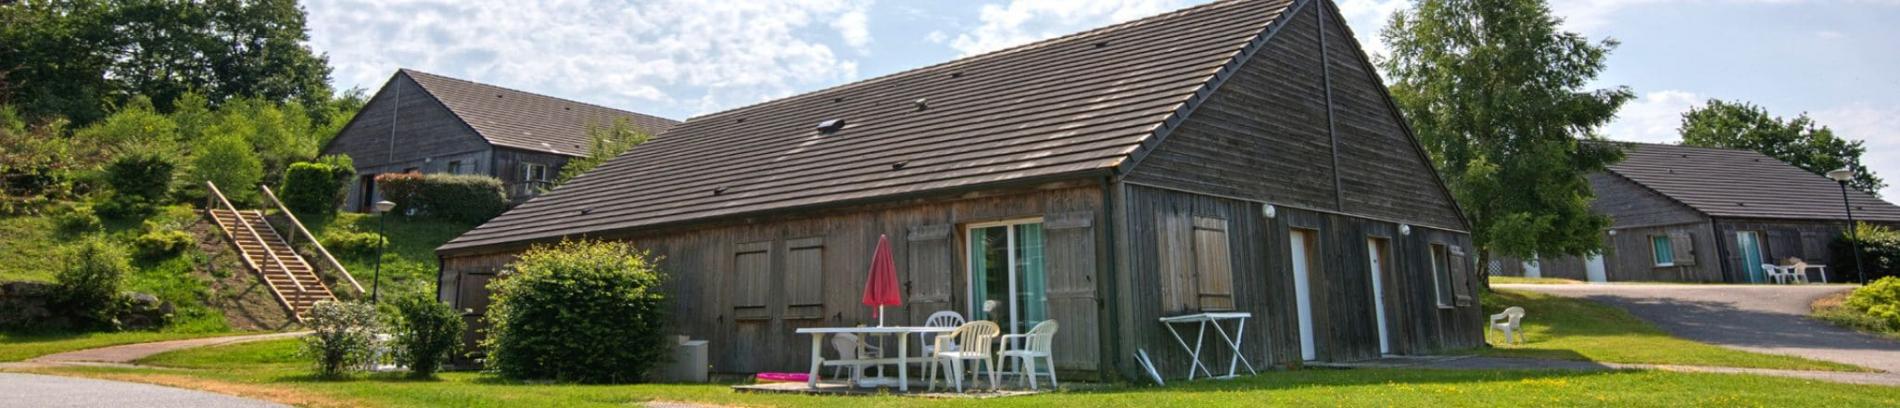 Slide Résidence Le Domaine du Bosquet à Égletons - Maisons équipées avec terrasse privative